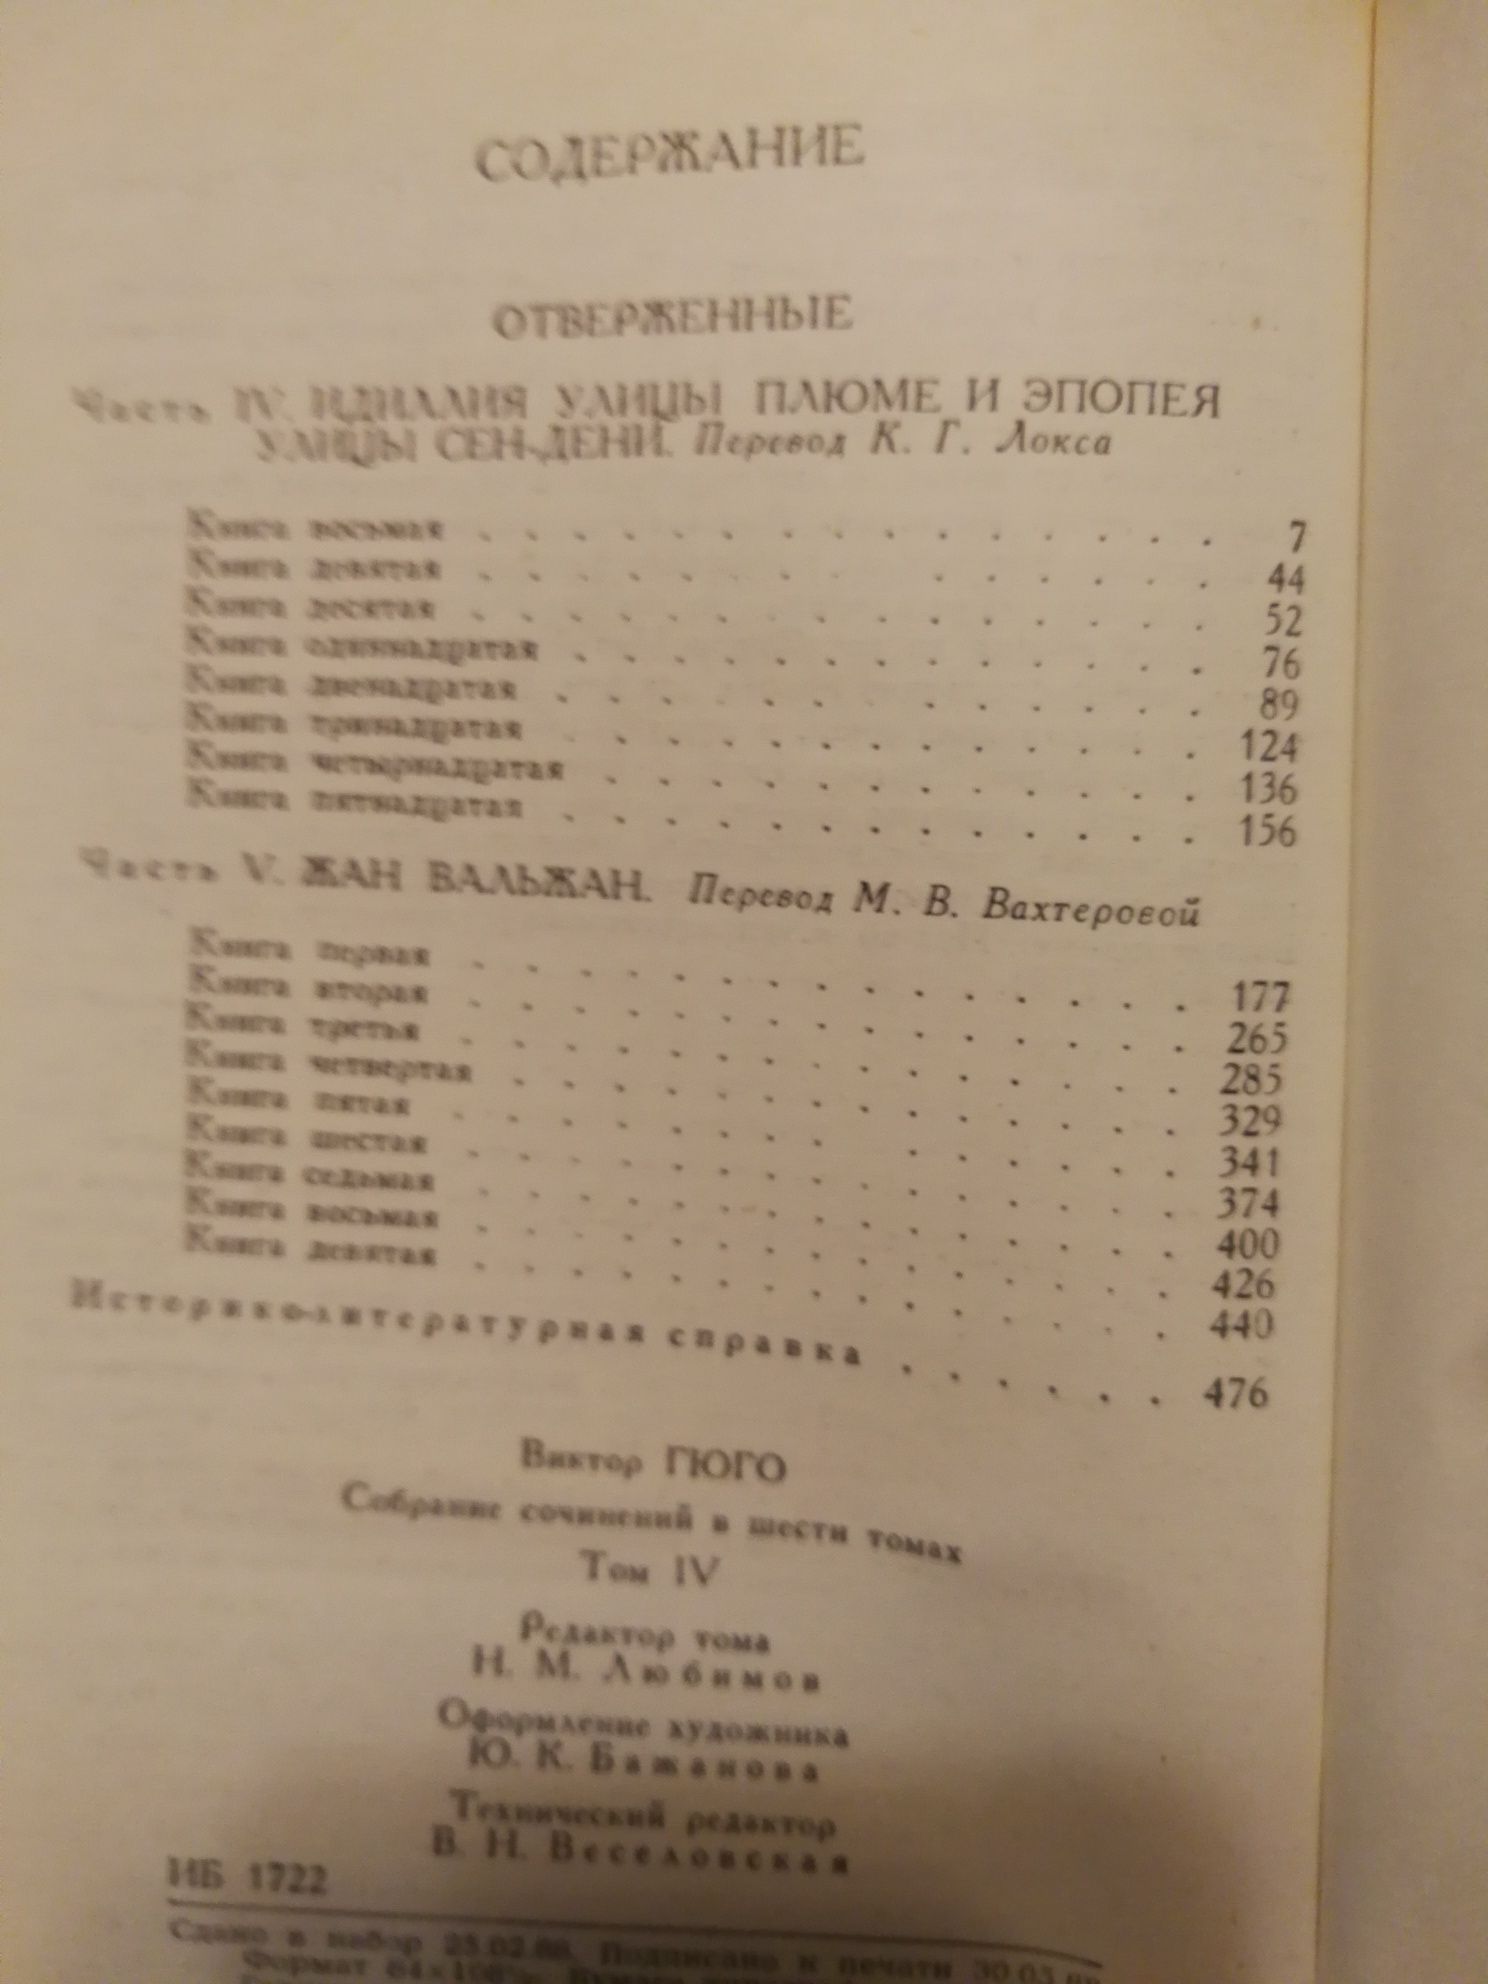 Віктор Гюго в шести томах.